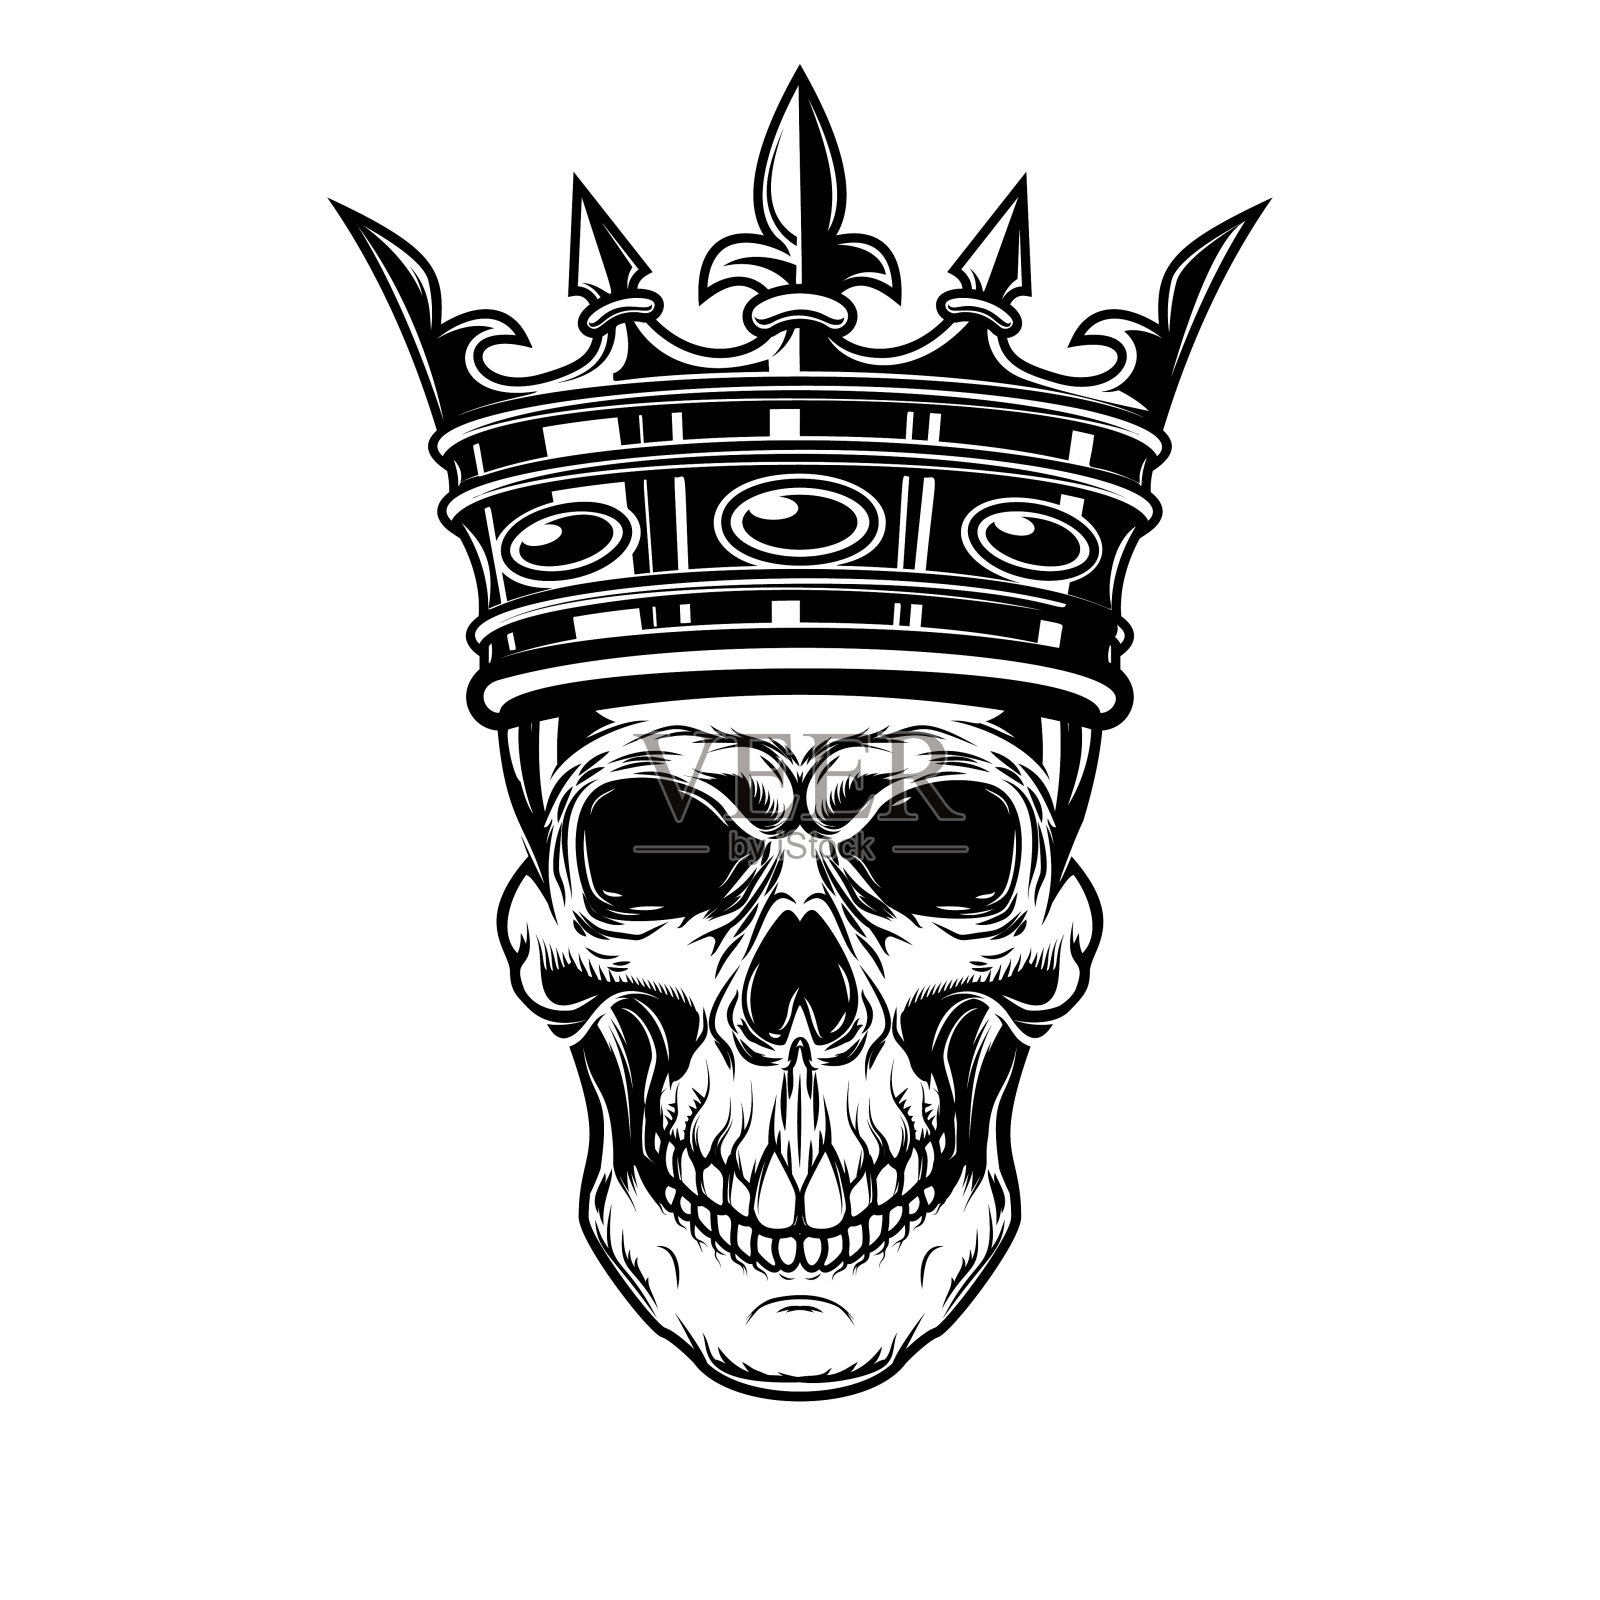 带王冠的骷髅头。标签、标志、会徽的设计元素。矢量图插画图片素材